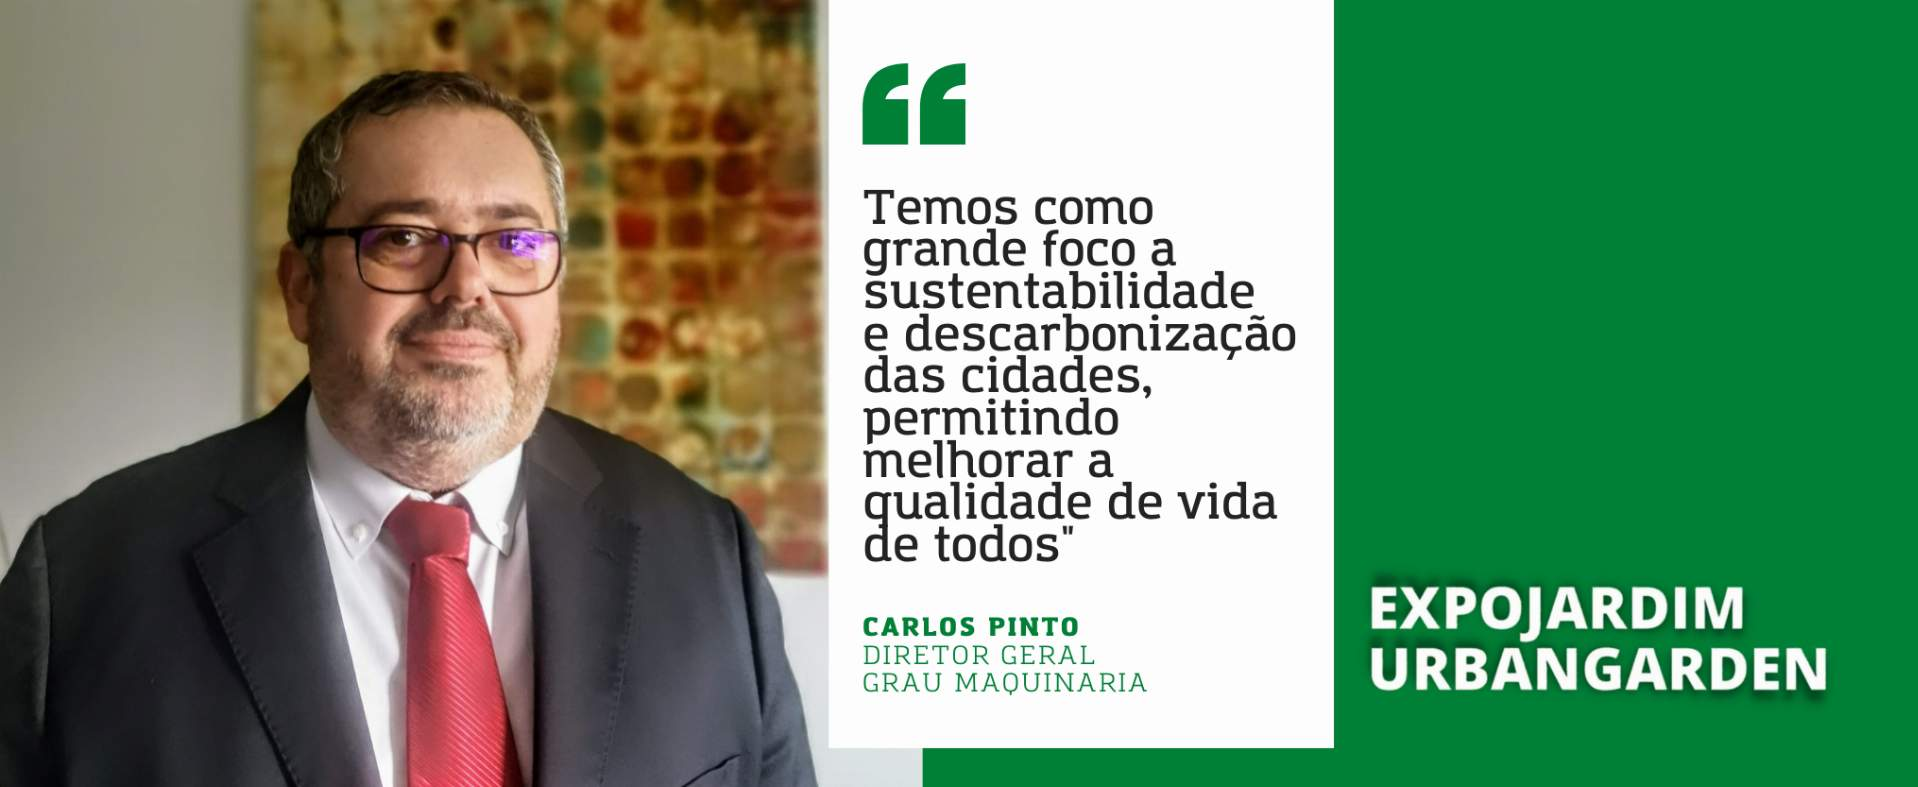 Grau Maquinària Portugal: “Temos como grande foco a sustentabilidade e descarbonização das cidades, permitindo melhorar a qualidade de vida de todos”